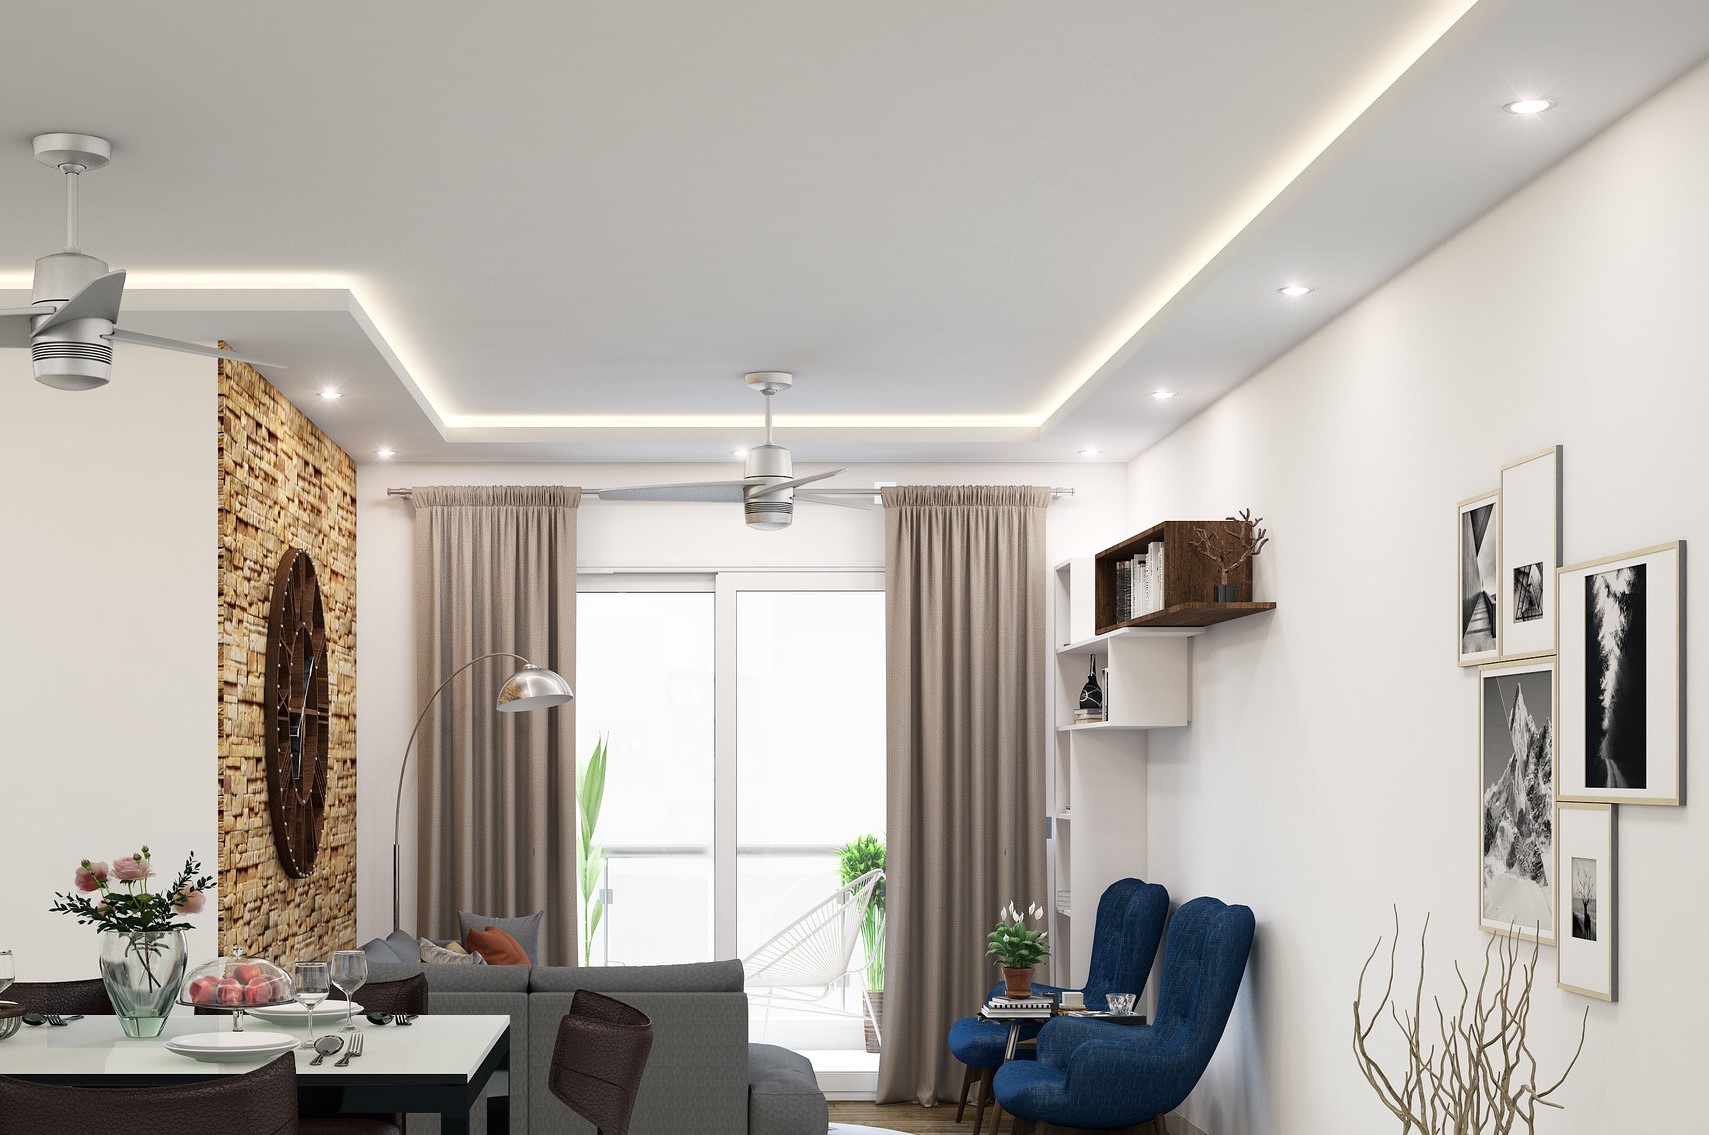 Living room lights - ceiling illumination